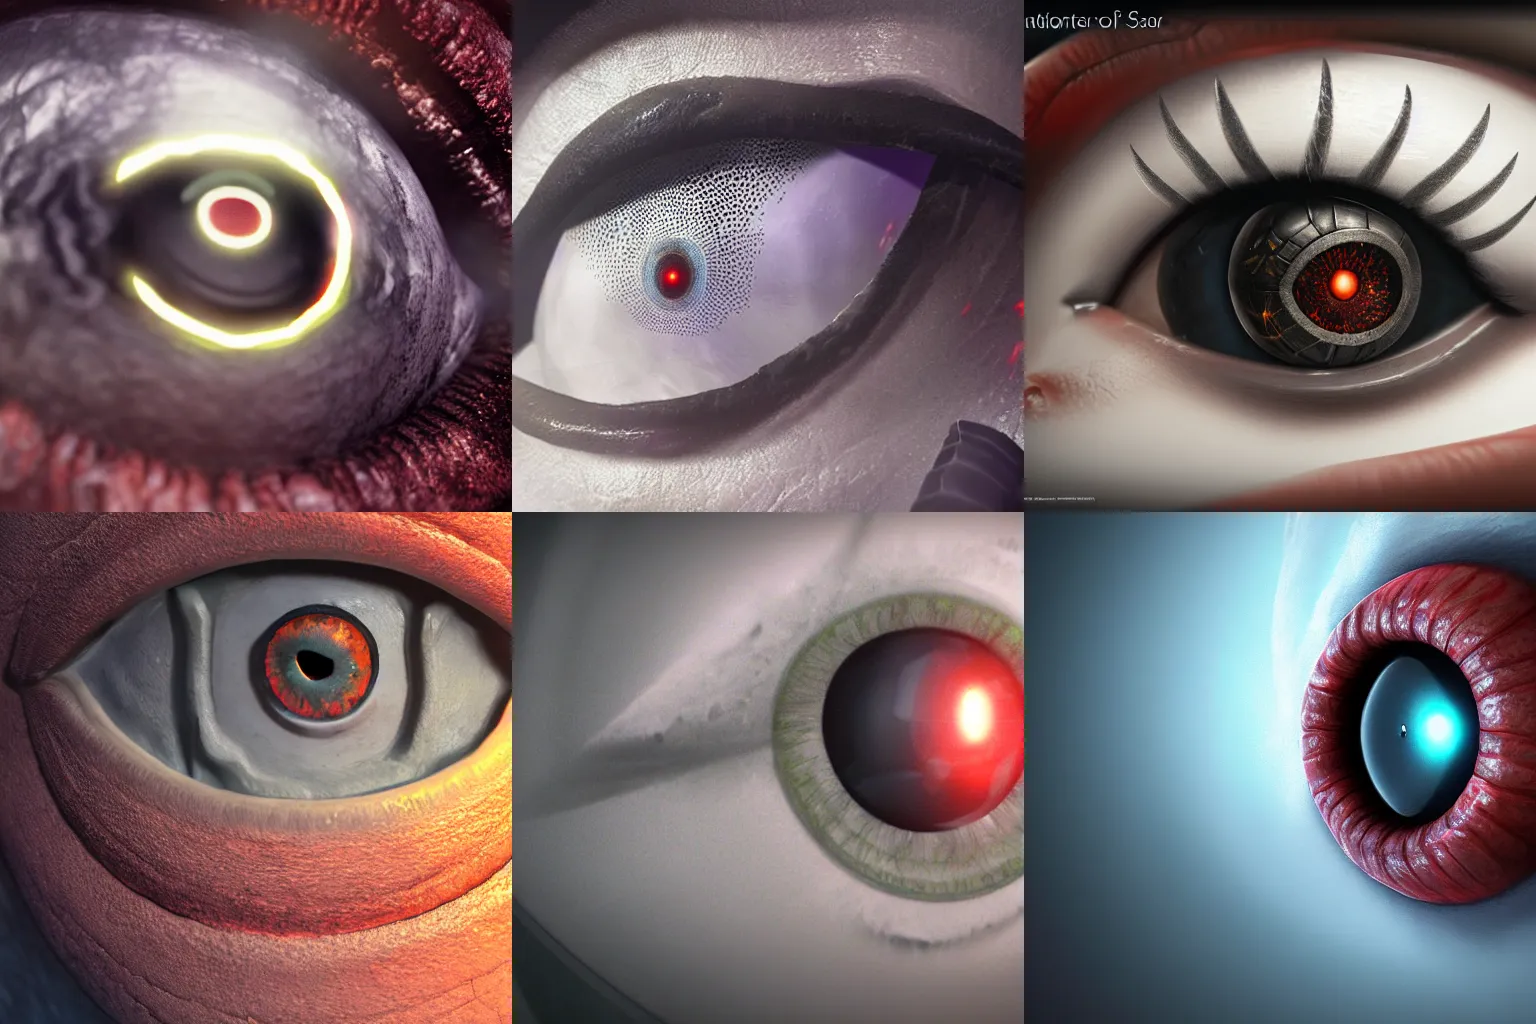 Prompt: eye of sauron, octane render, artstation trending